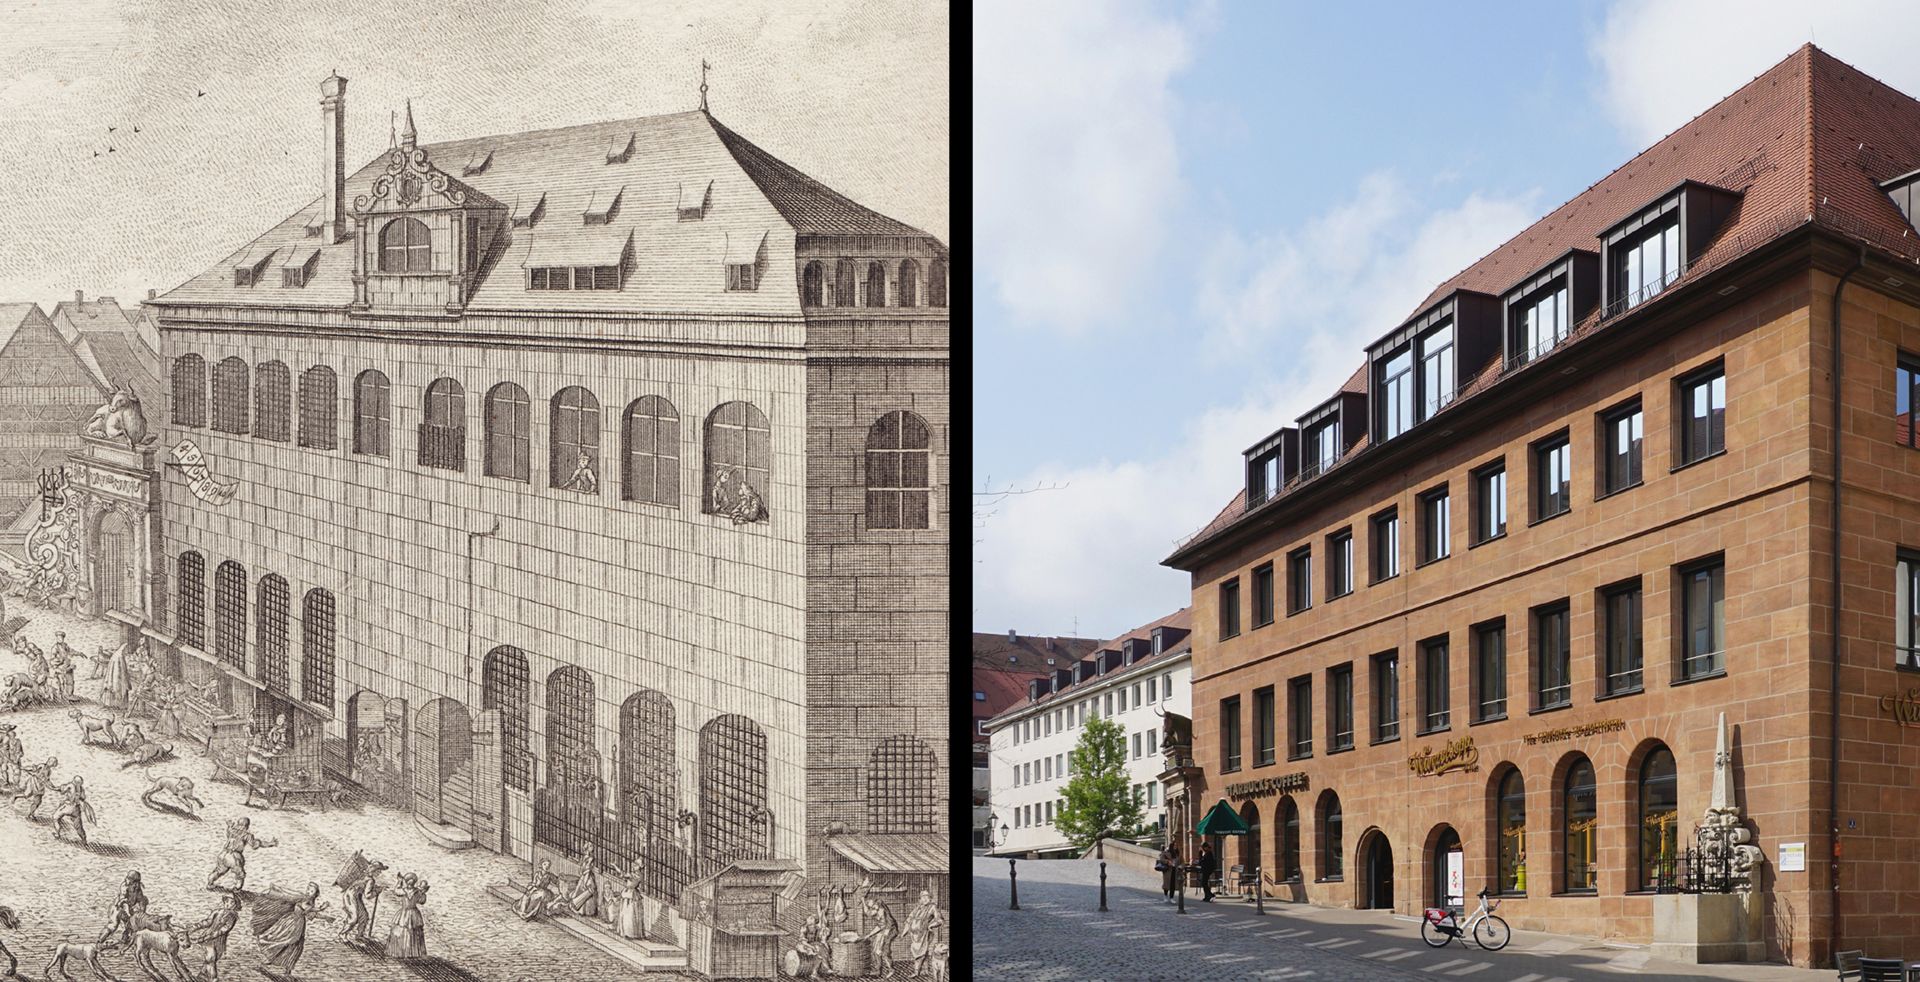 Fleischhauerbrunnen Ursprünglich größere Brunnenanlage siehe Vergleichsbild: links Ansicht von Delsenbach aus dem Jahre 1715